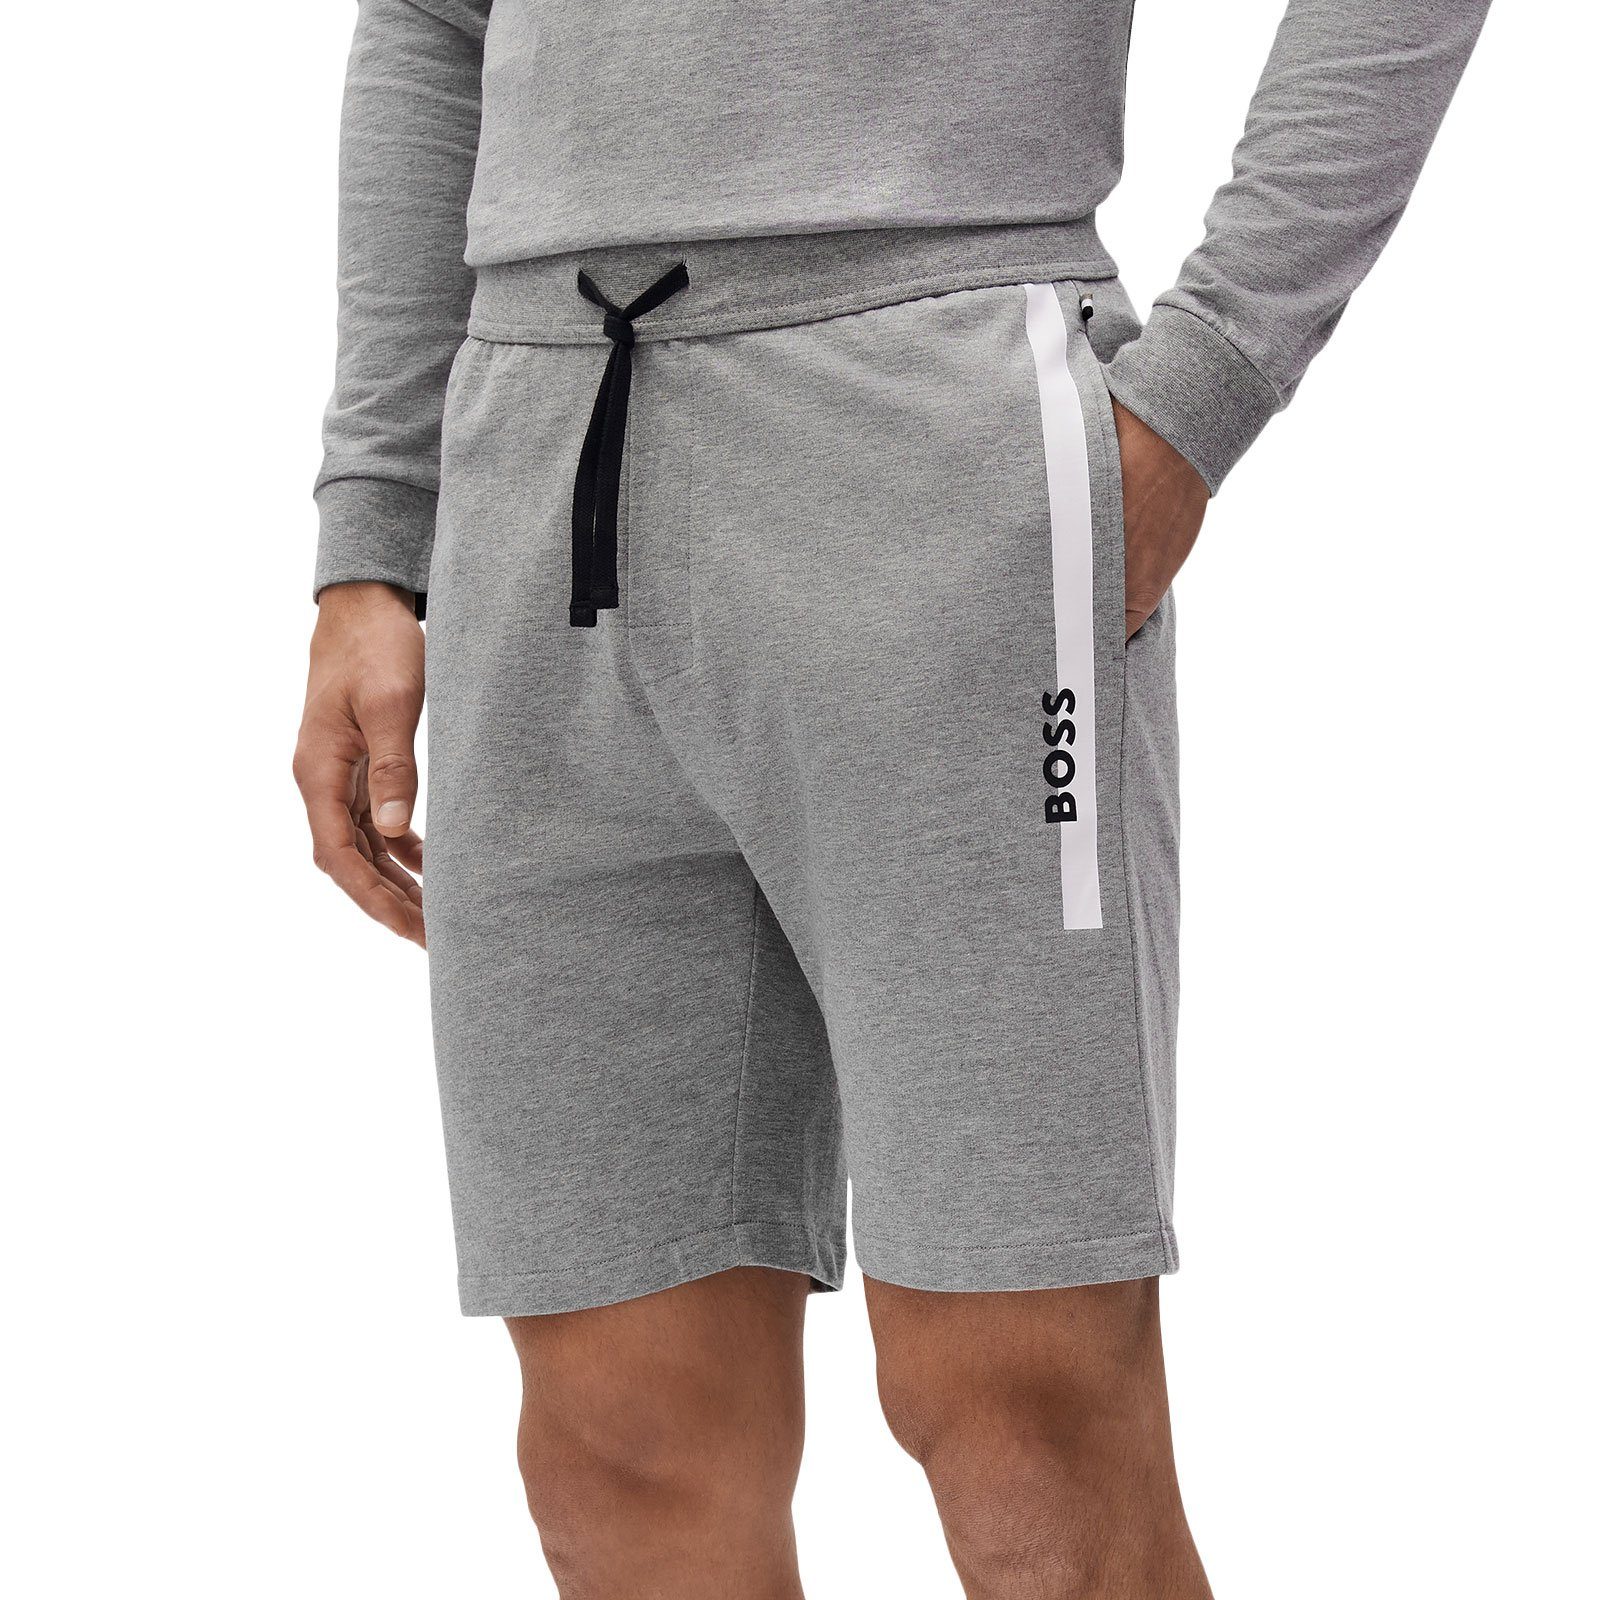 BOSS Shorts Authentic Shorts 033 grey mit medium kontrastfarbenen Streifen